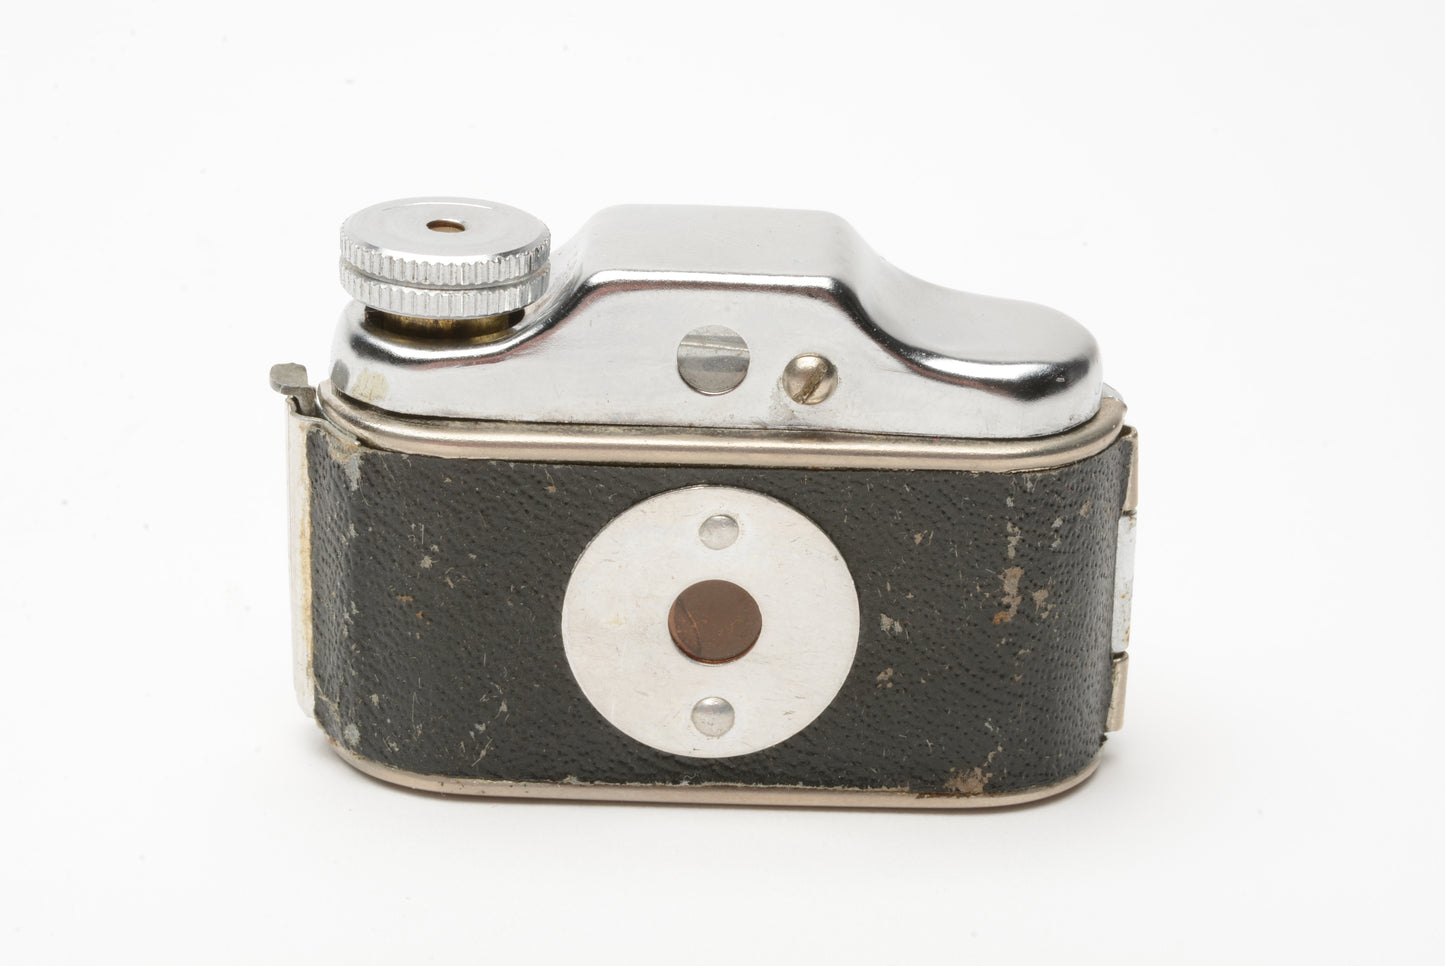 Hamco miniature camera w/case, clean